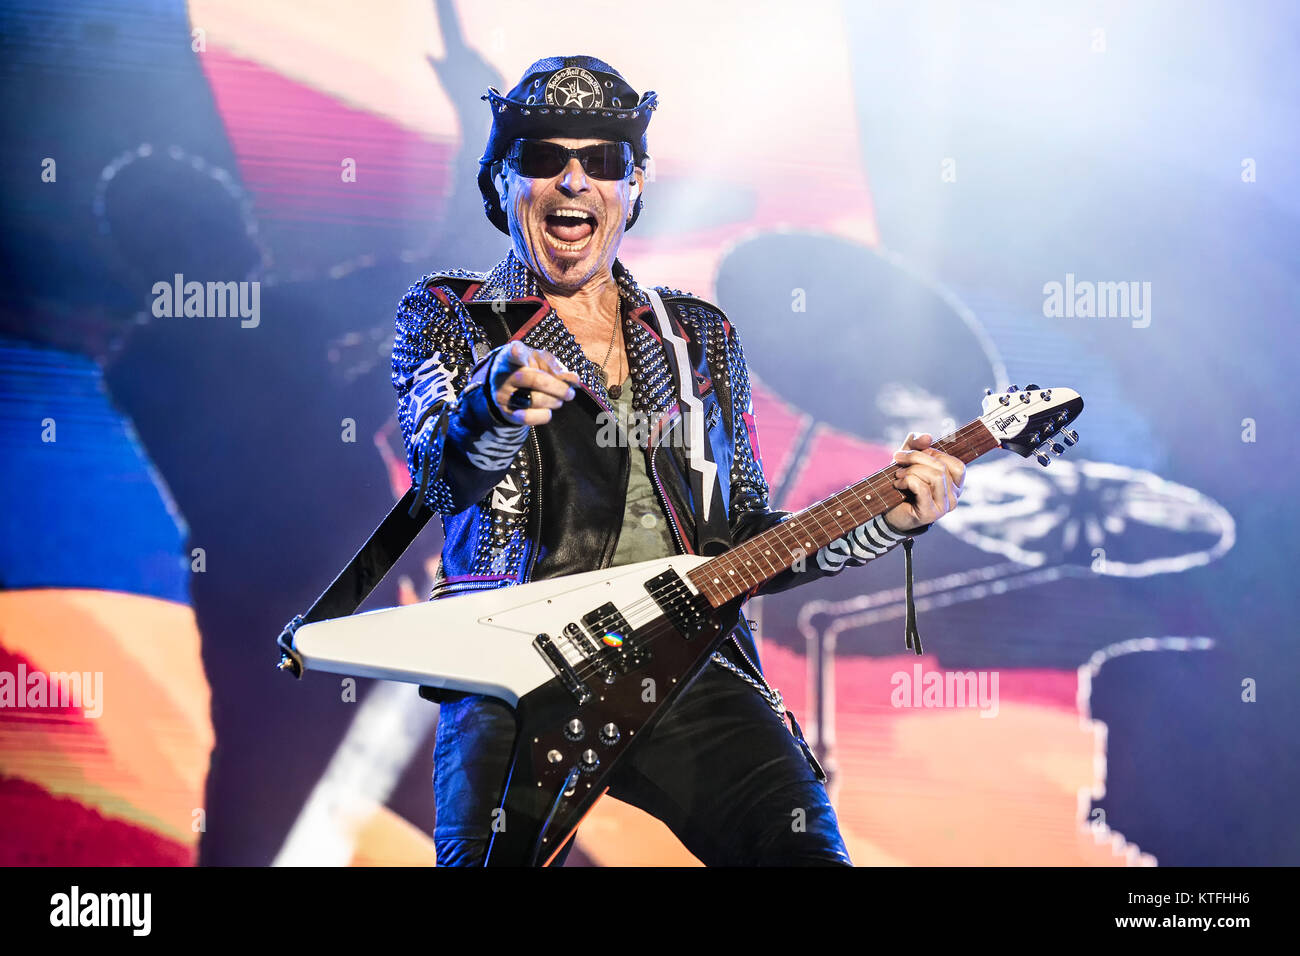 La banda de rock alemana Scorpions realiza un concierto en vivo en el  festival de música sueco Sweden Rock Festival 2017. Aquí el guitarrista  Rudolf Schenker es visto en vivo en el